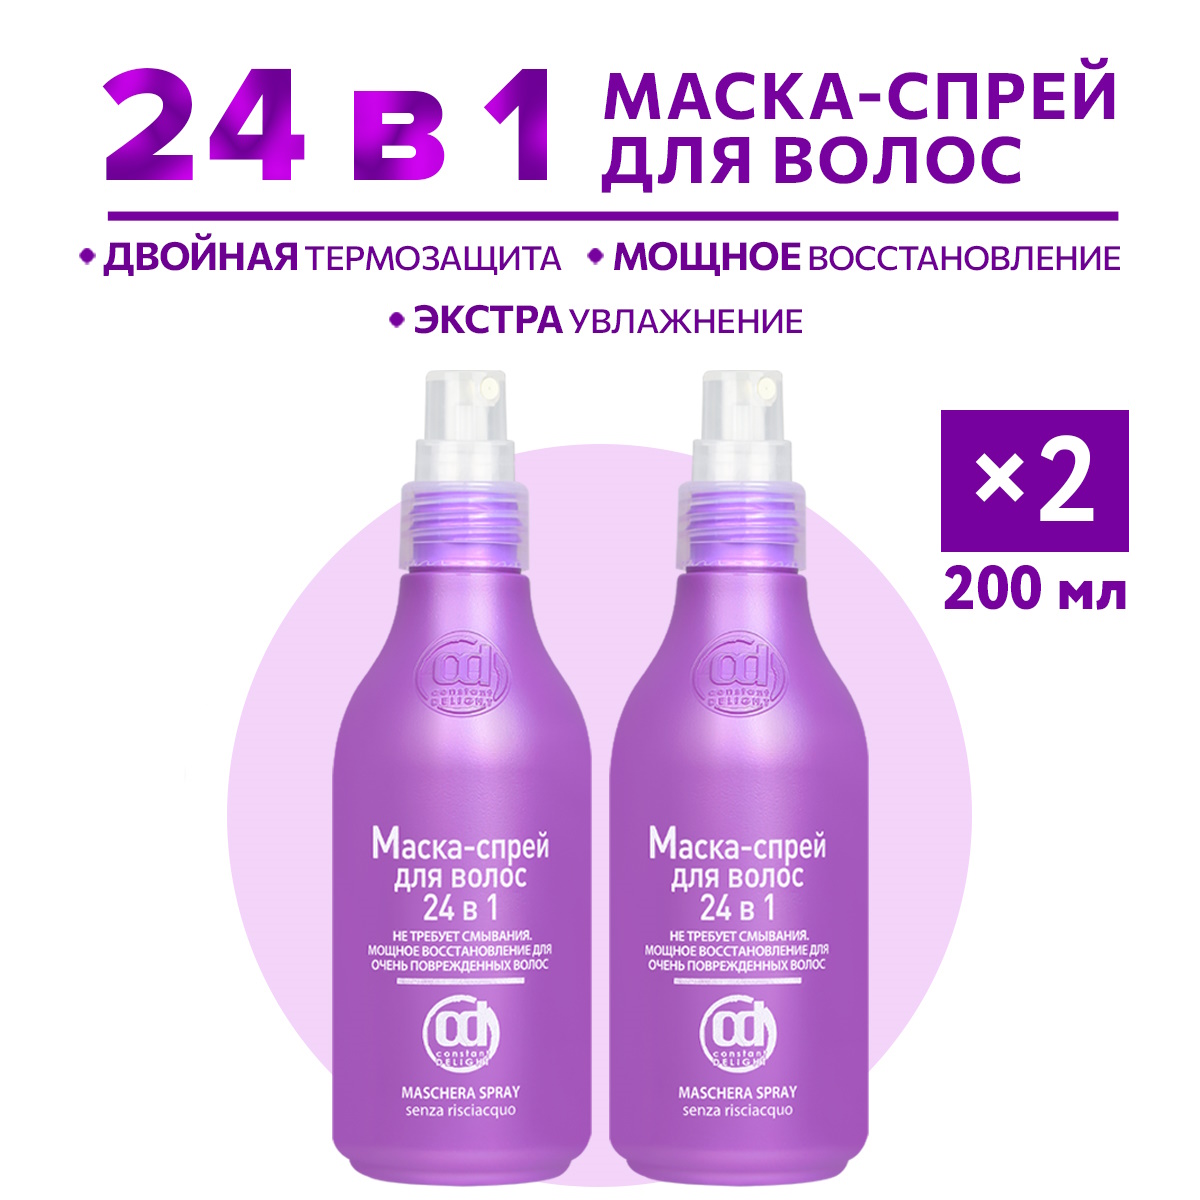 Маска-спрей для восстановления волос Constant Delight 24 в 1 200 мл - 2 шт